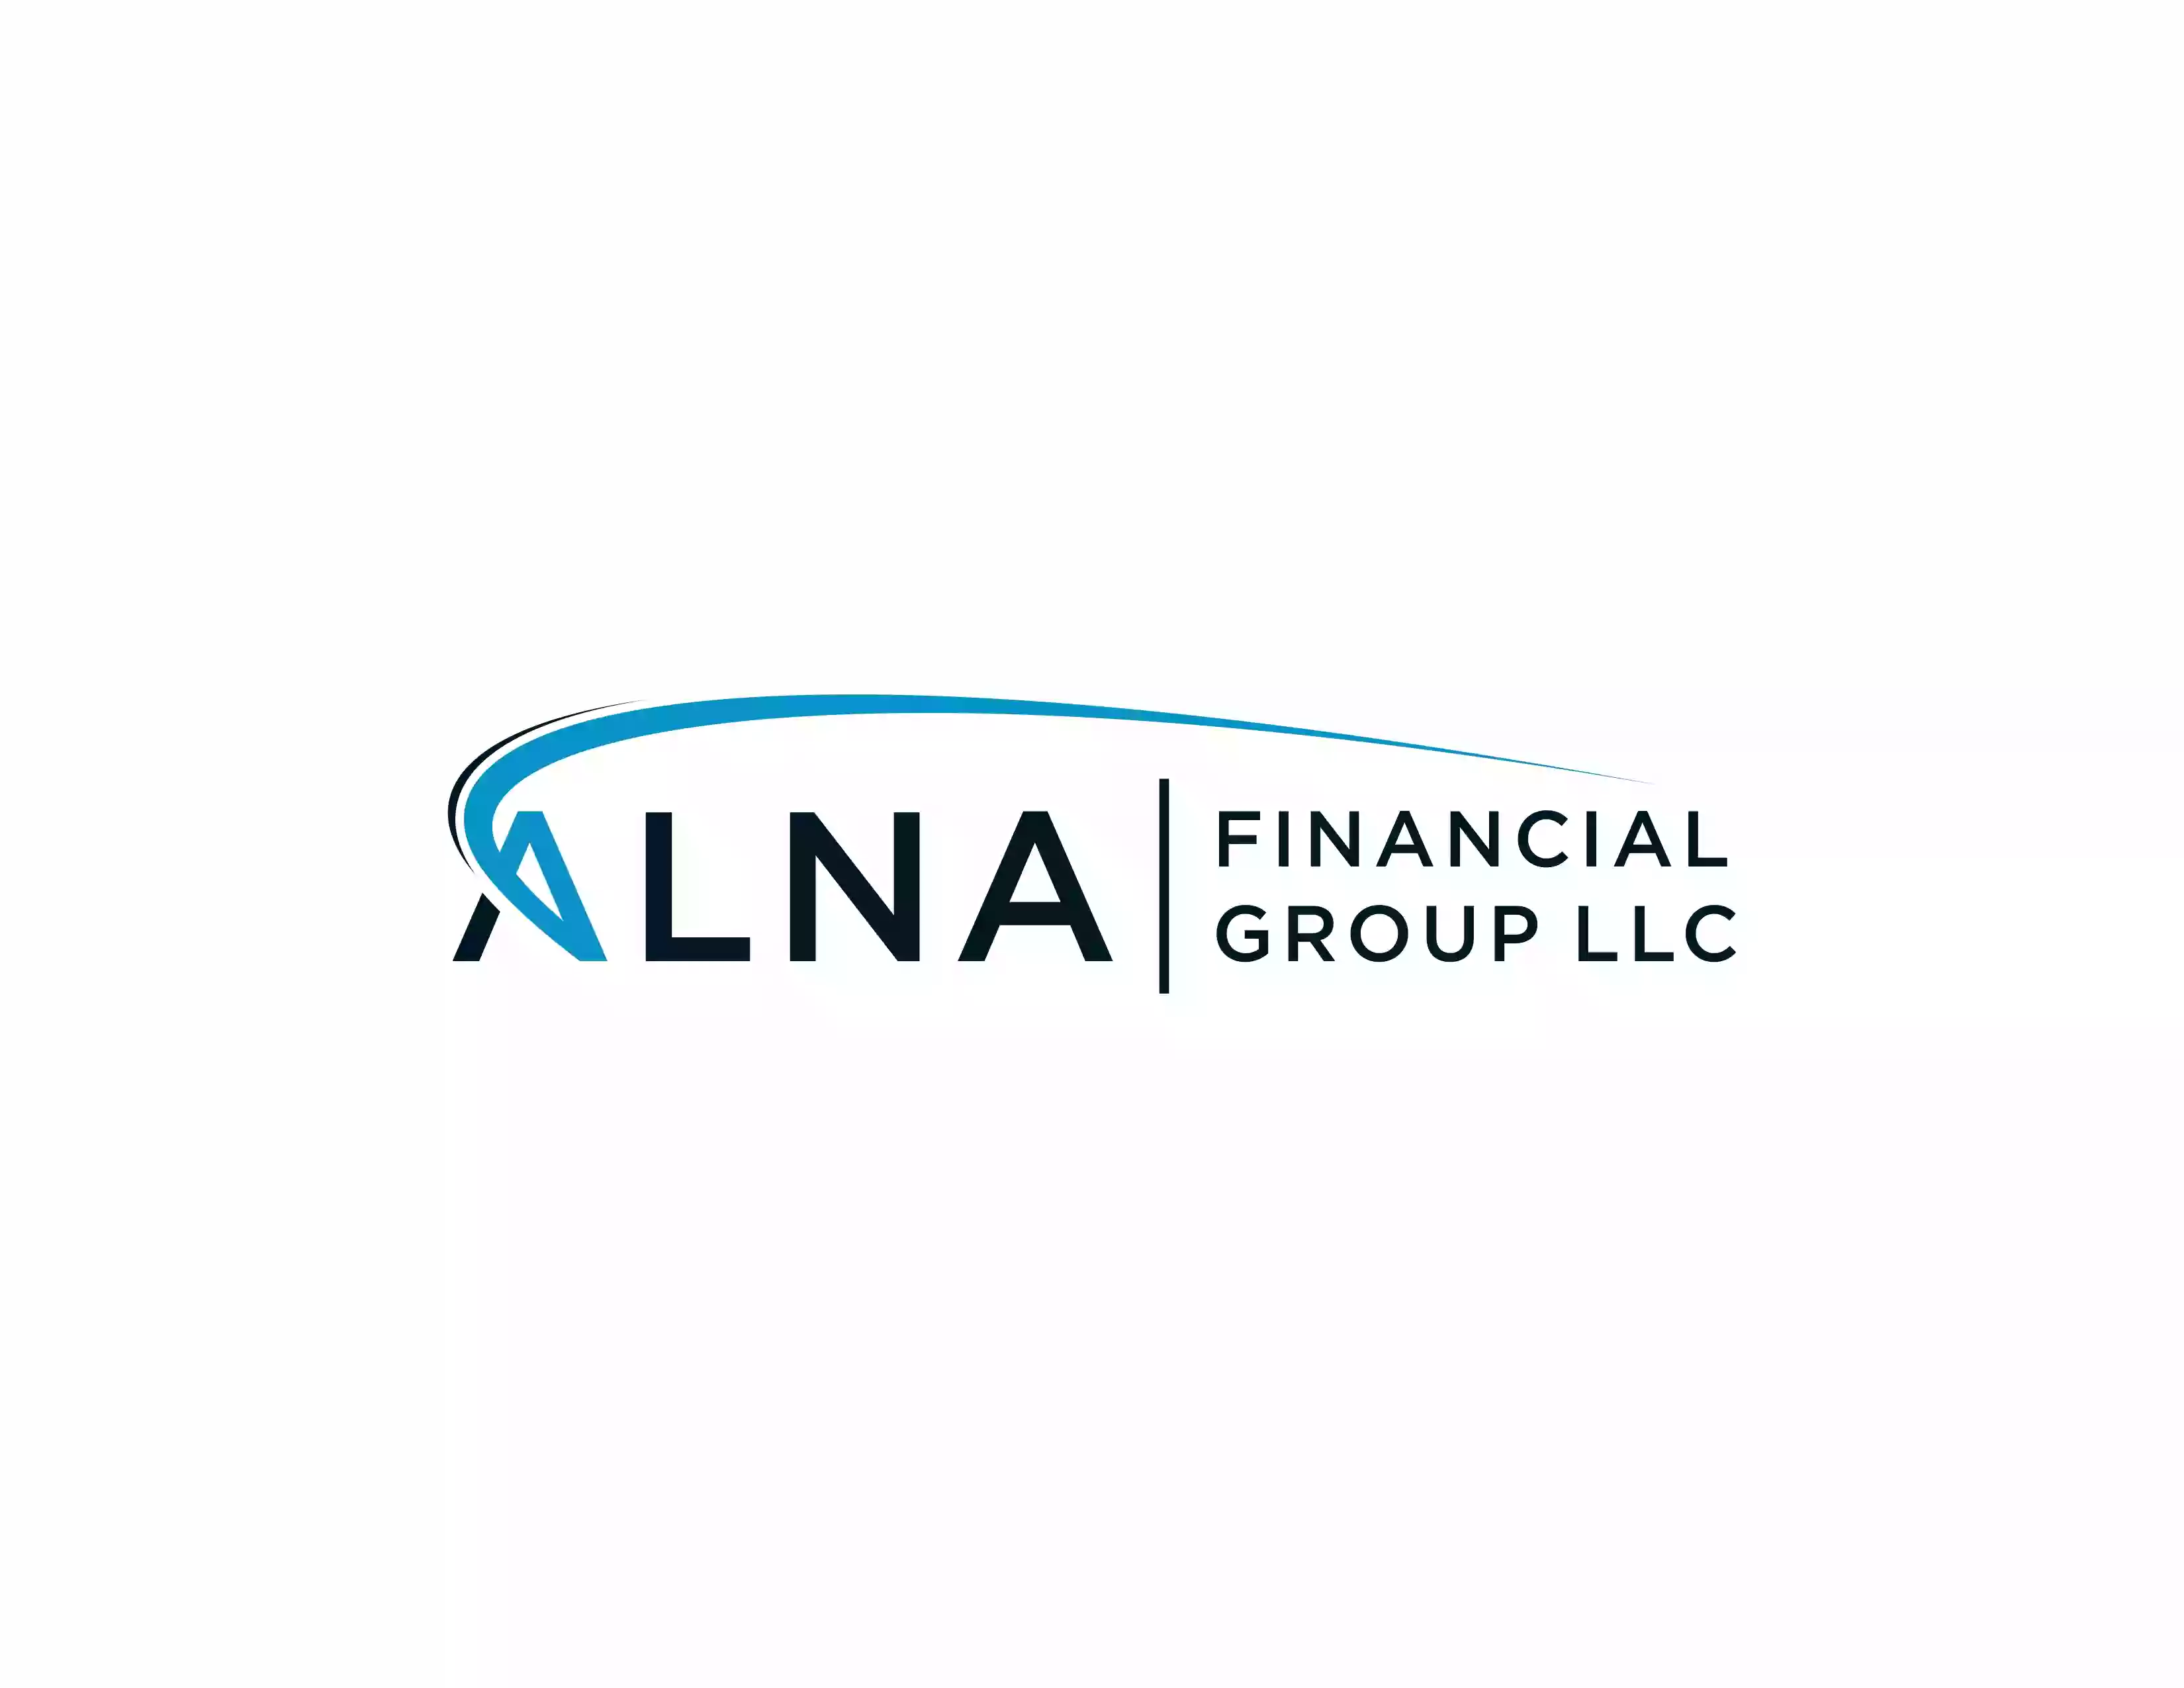 ALNA Financial